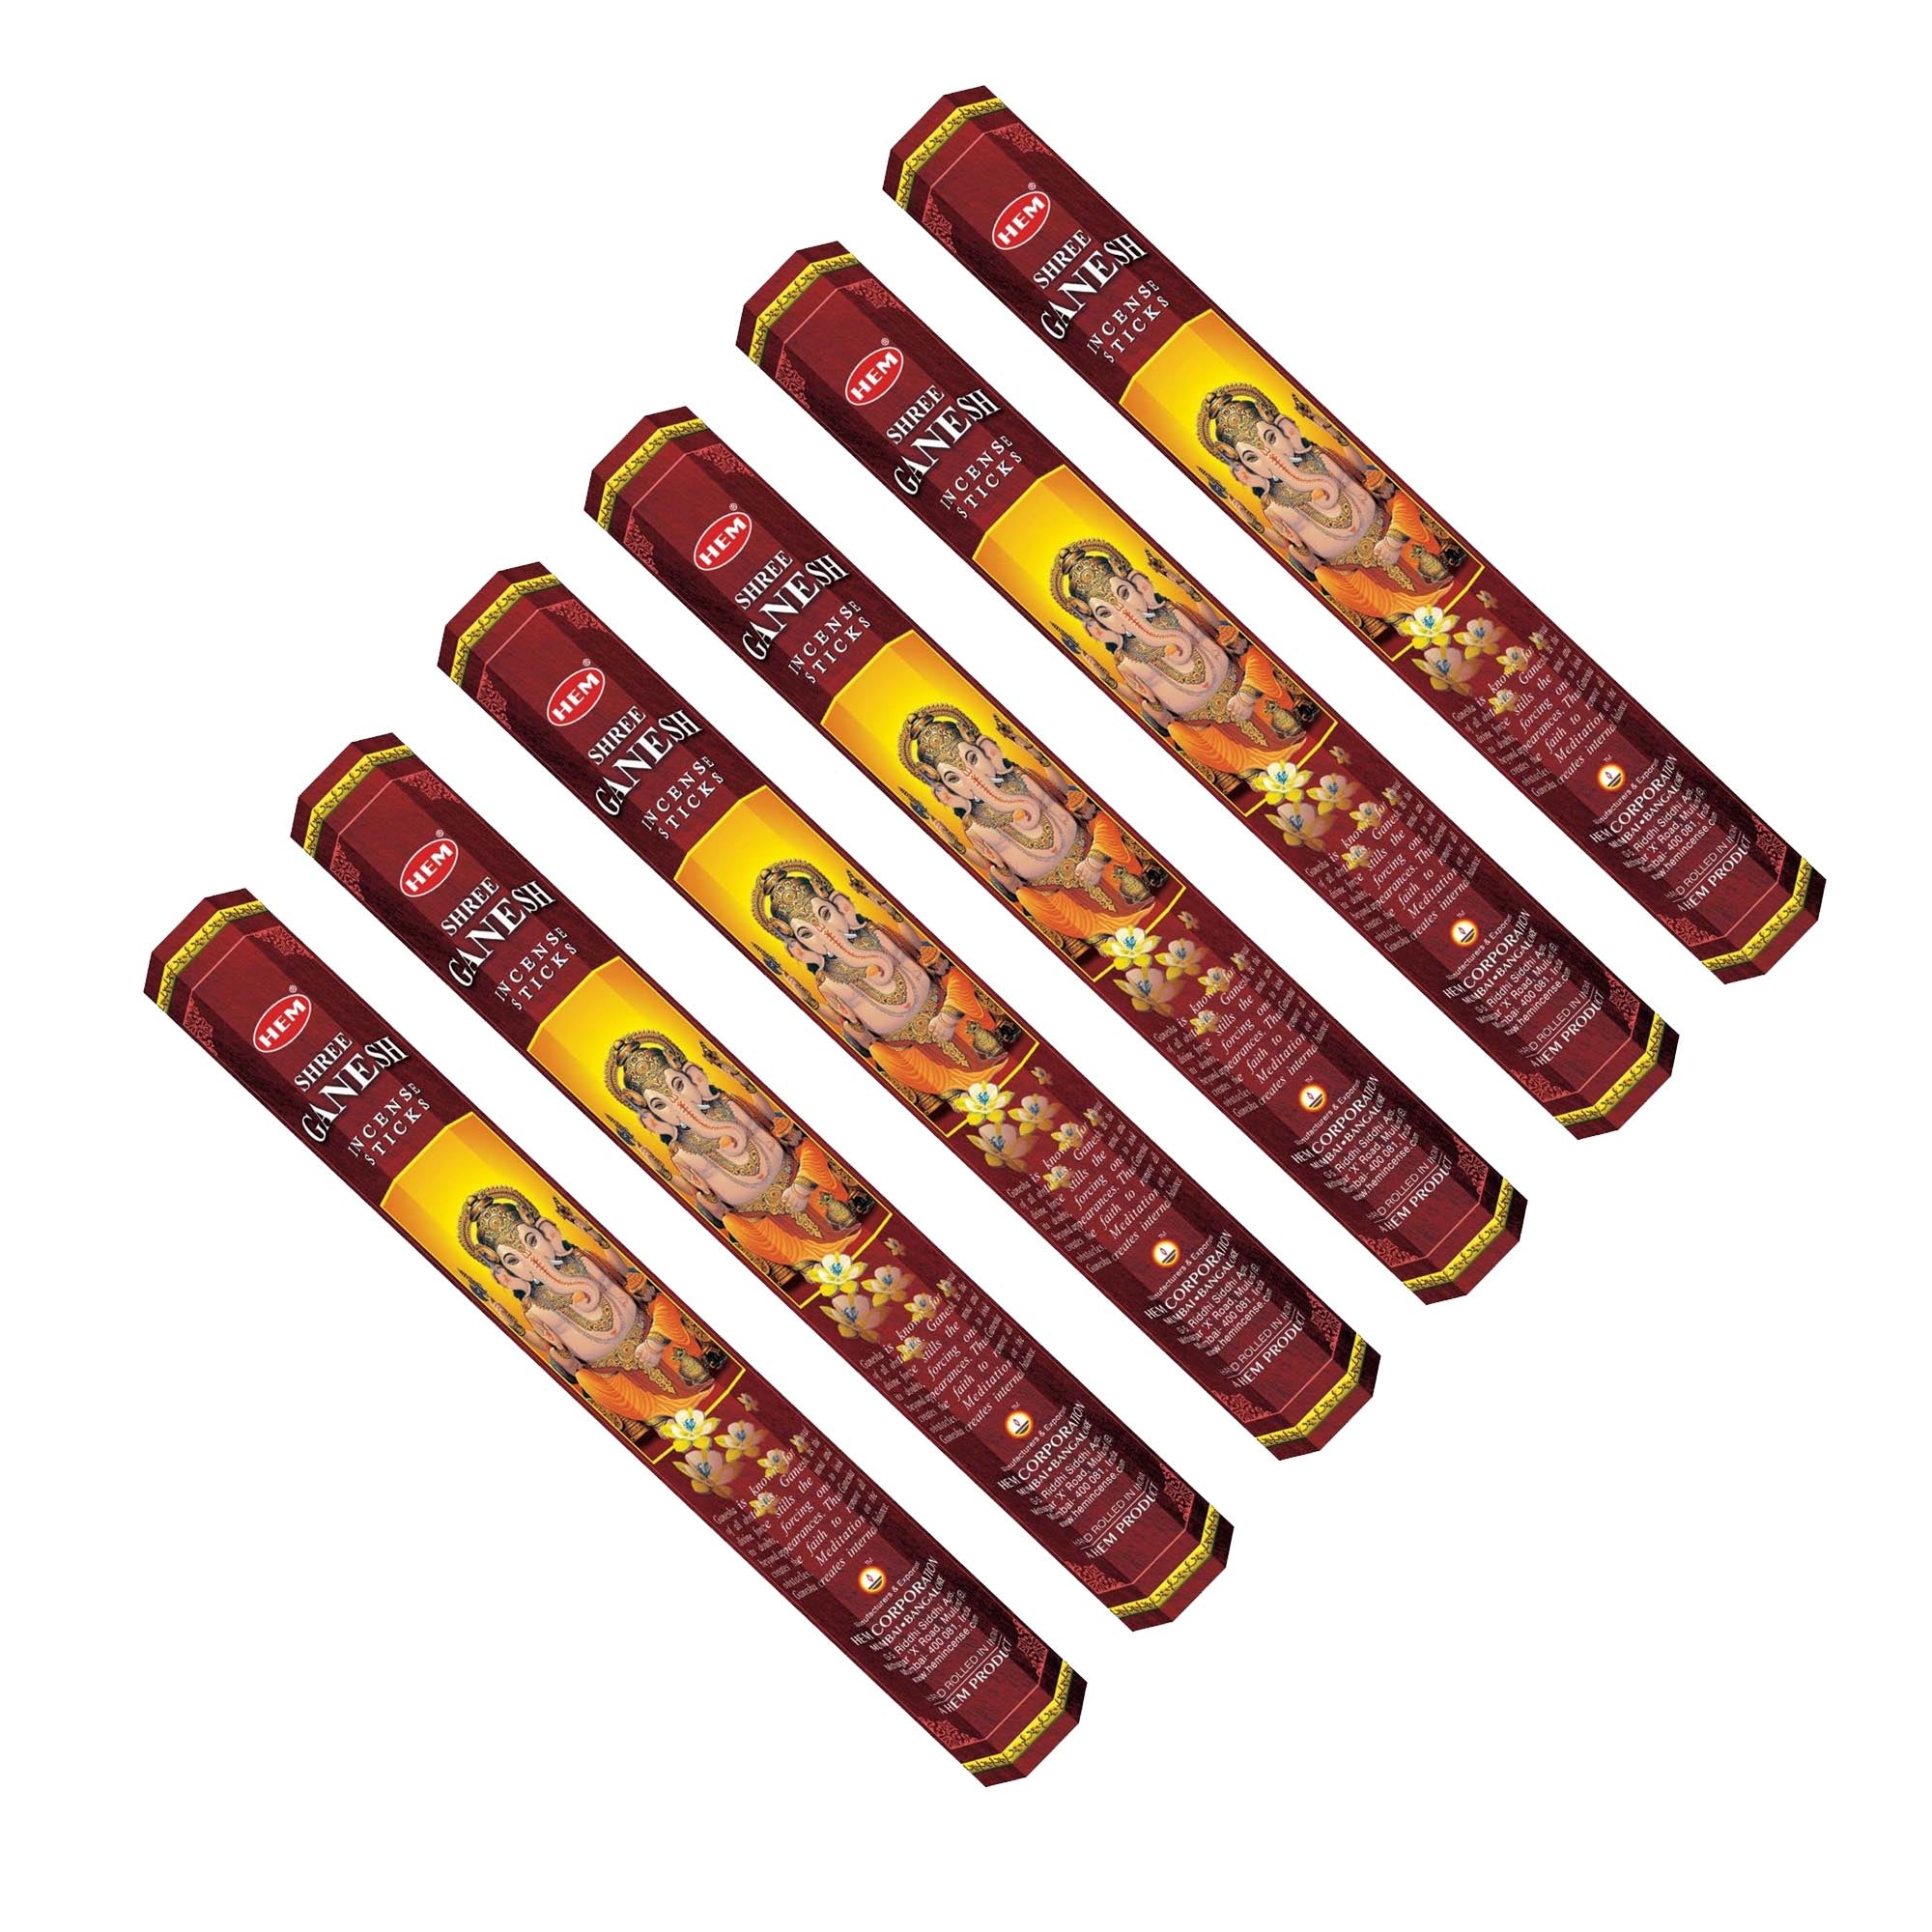 HEM - Hexagon - Shree Ganesh Incense Sticks